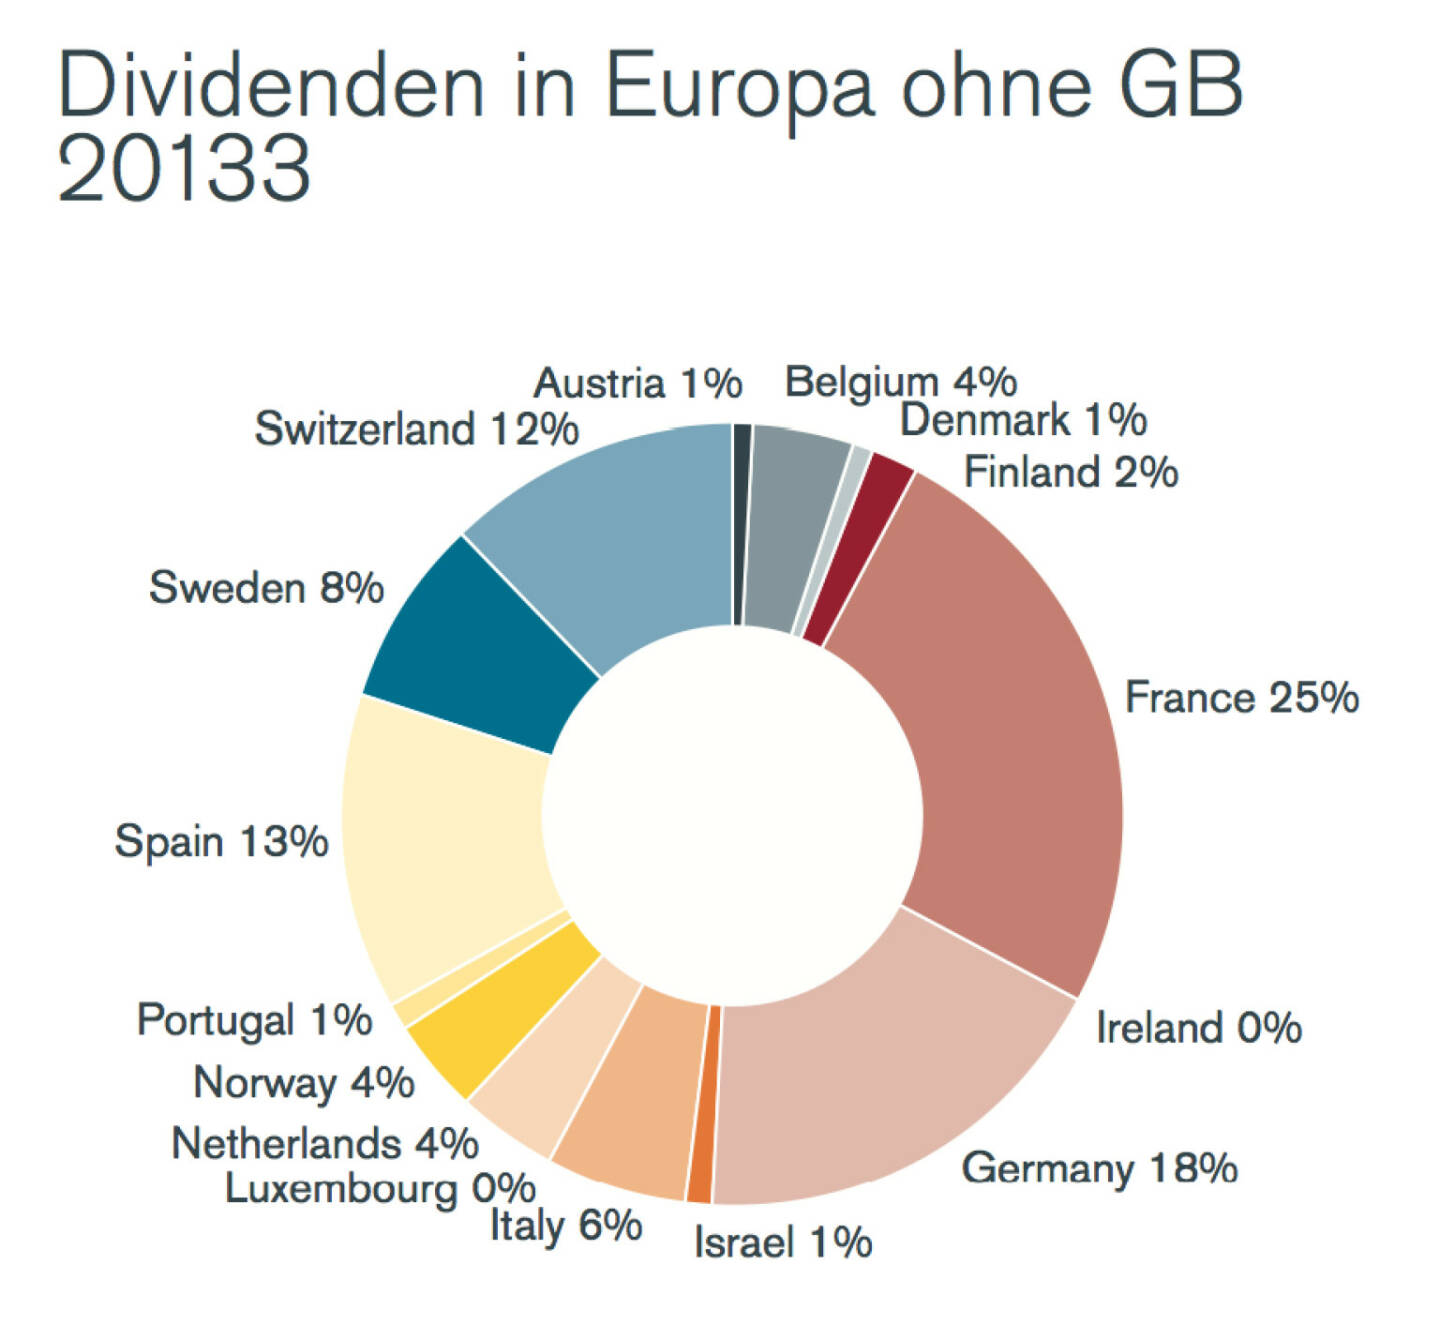 Dividenden in Europa ohne GB